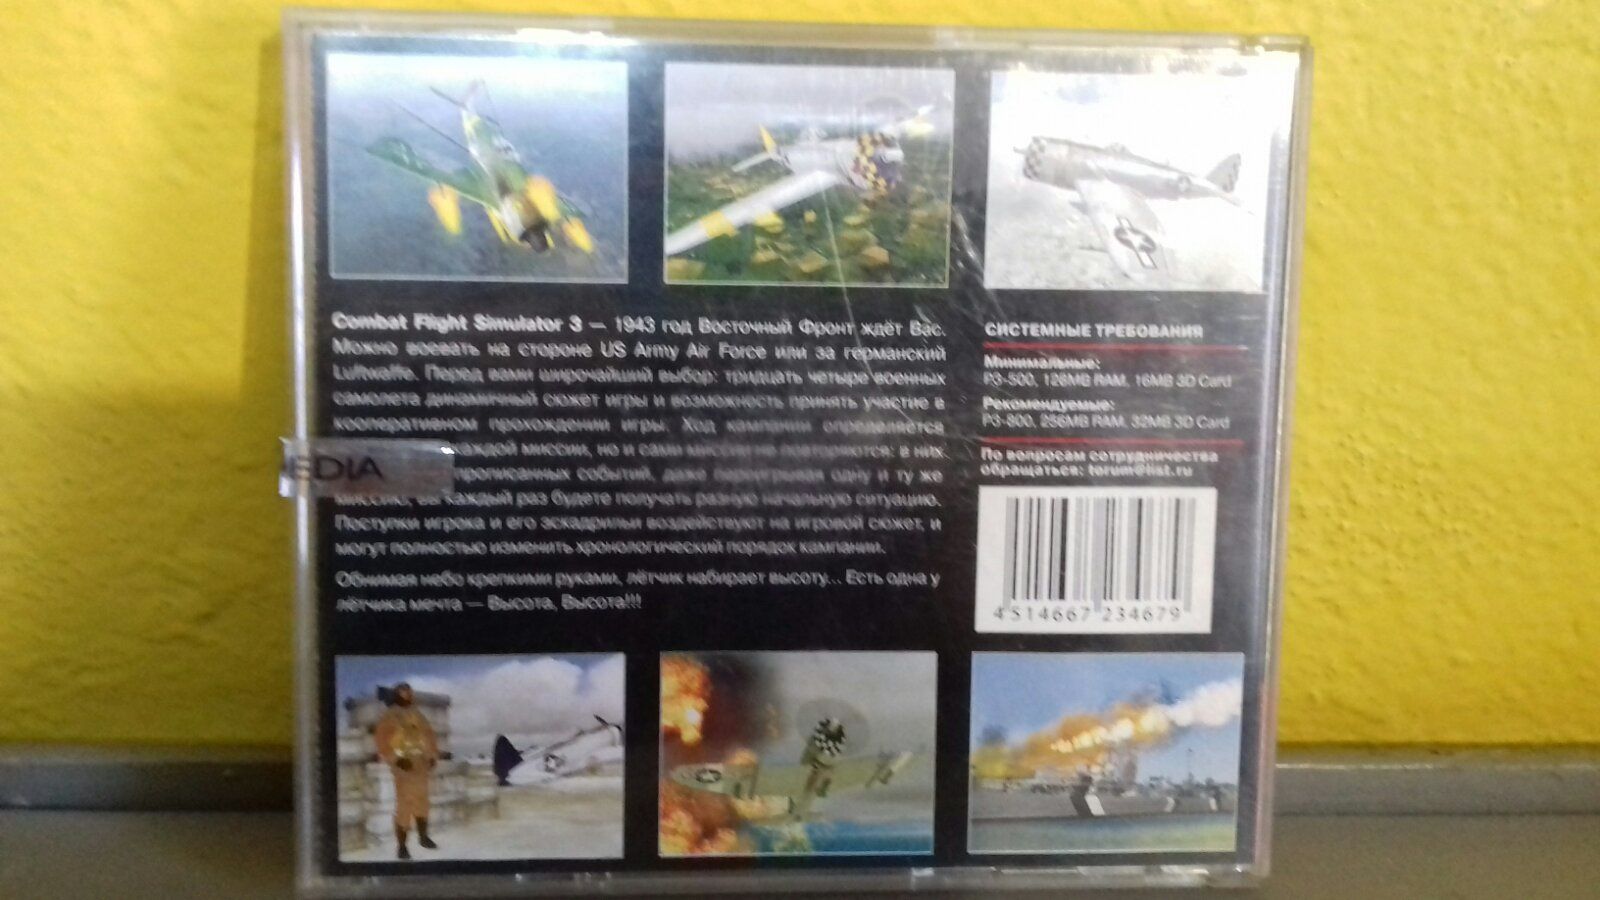 Лётчик. Авиасимулятор. Combat Flight Simulator 3. Диск для компьютера.